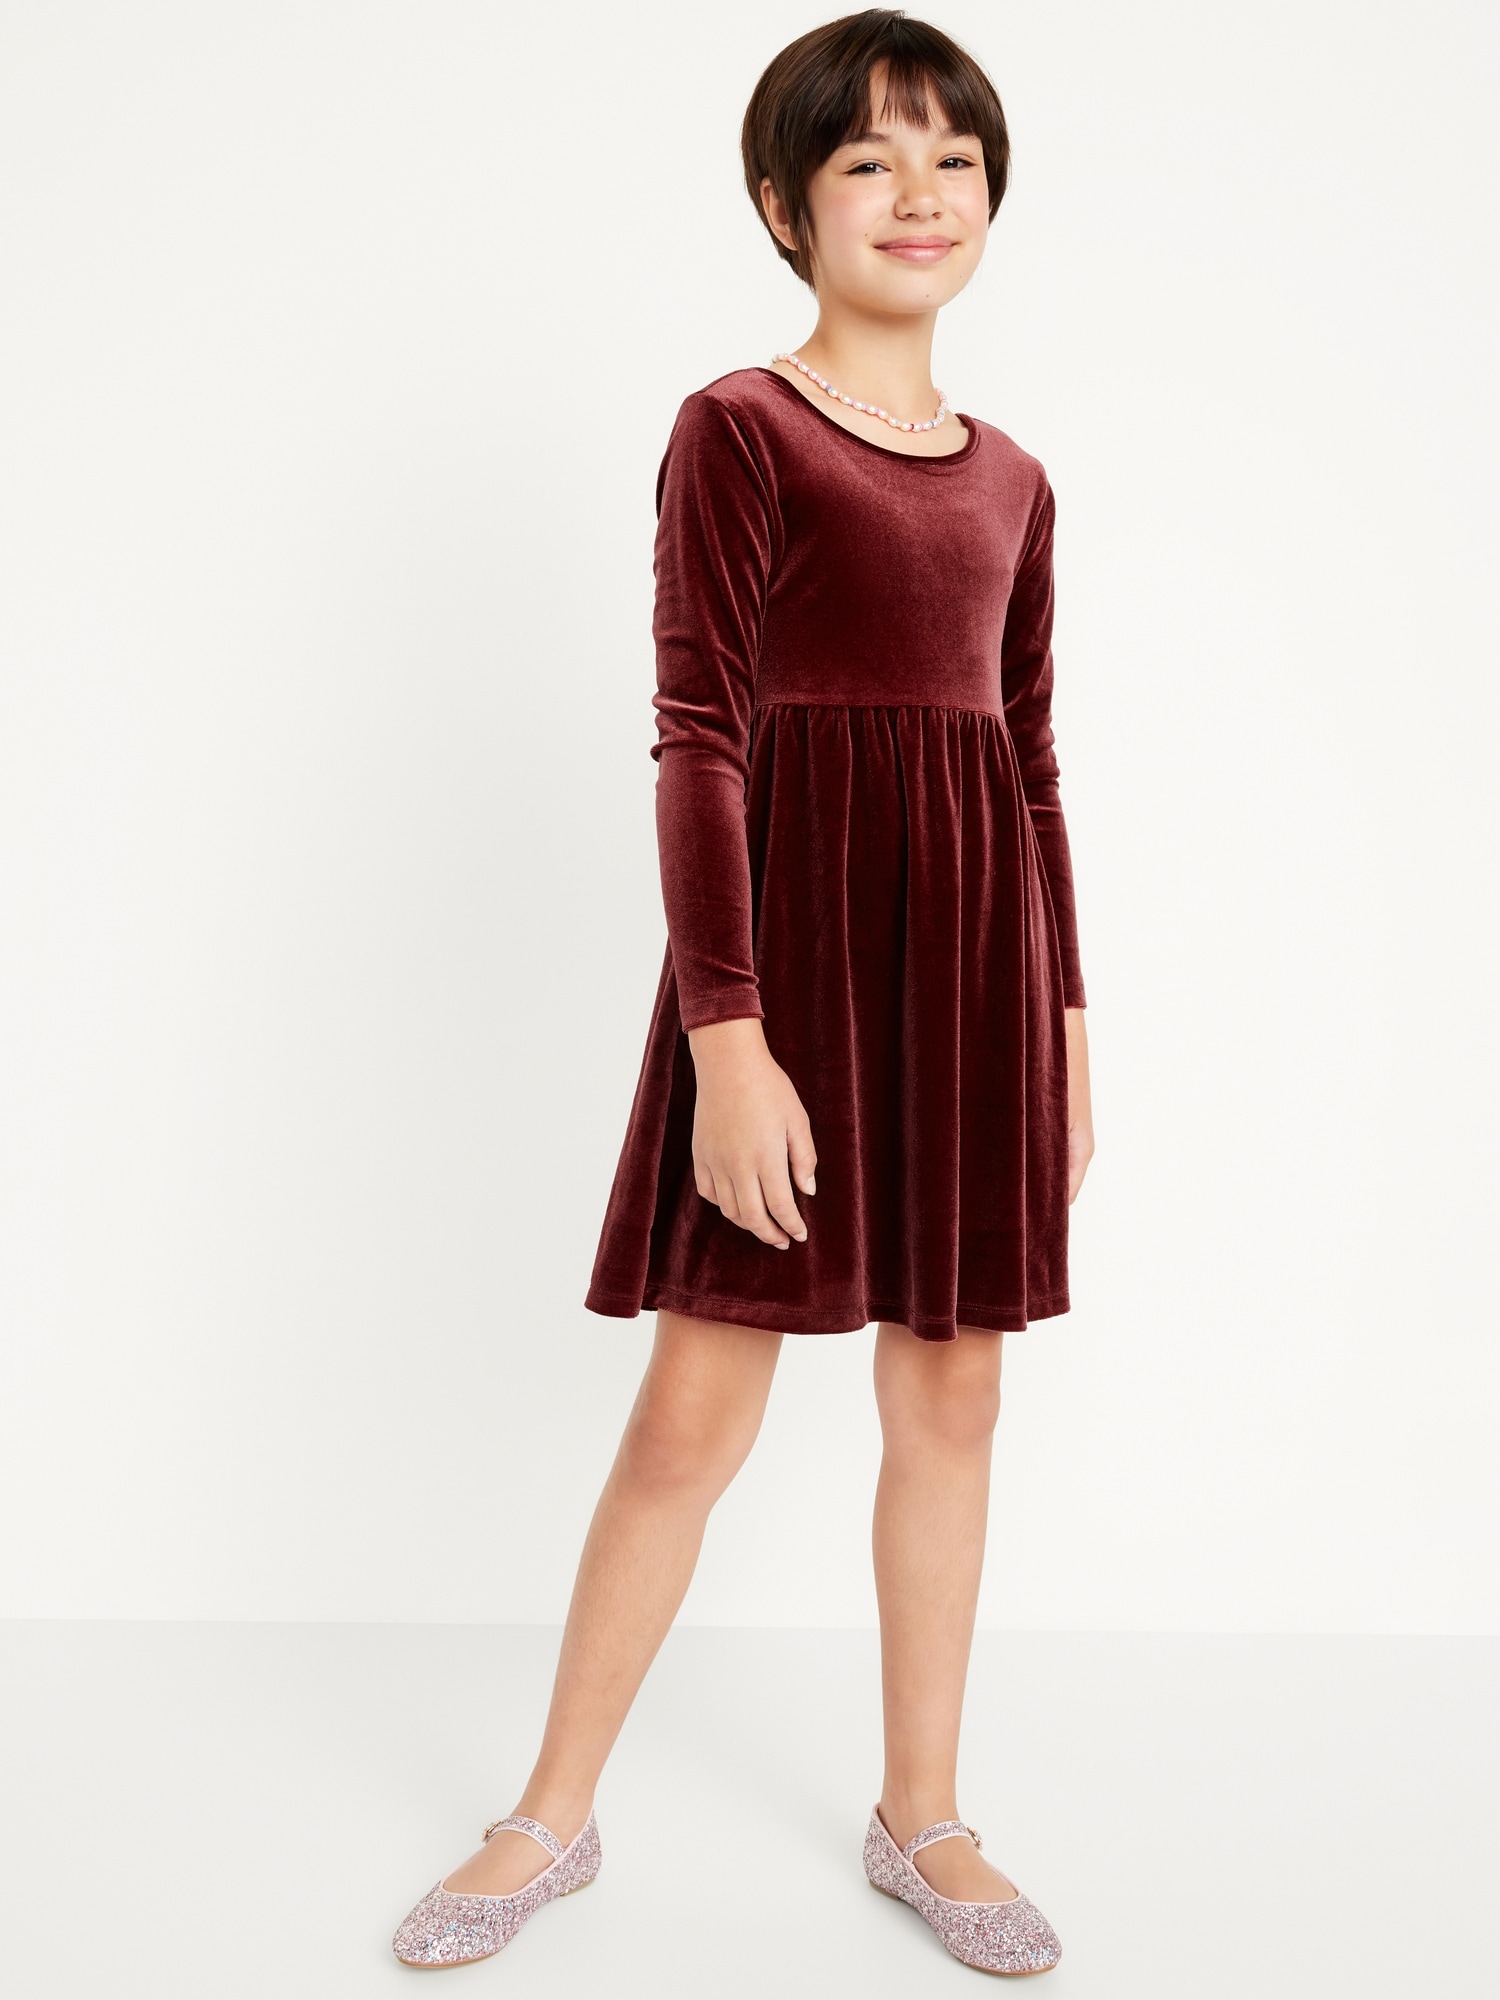 Long-Sleeve Velvet Fit & Flare Dress for Girls | Old Navy